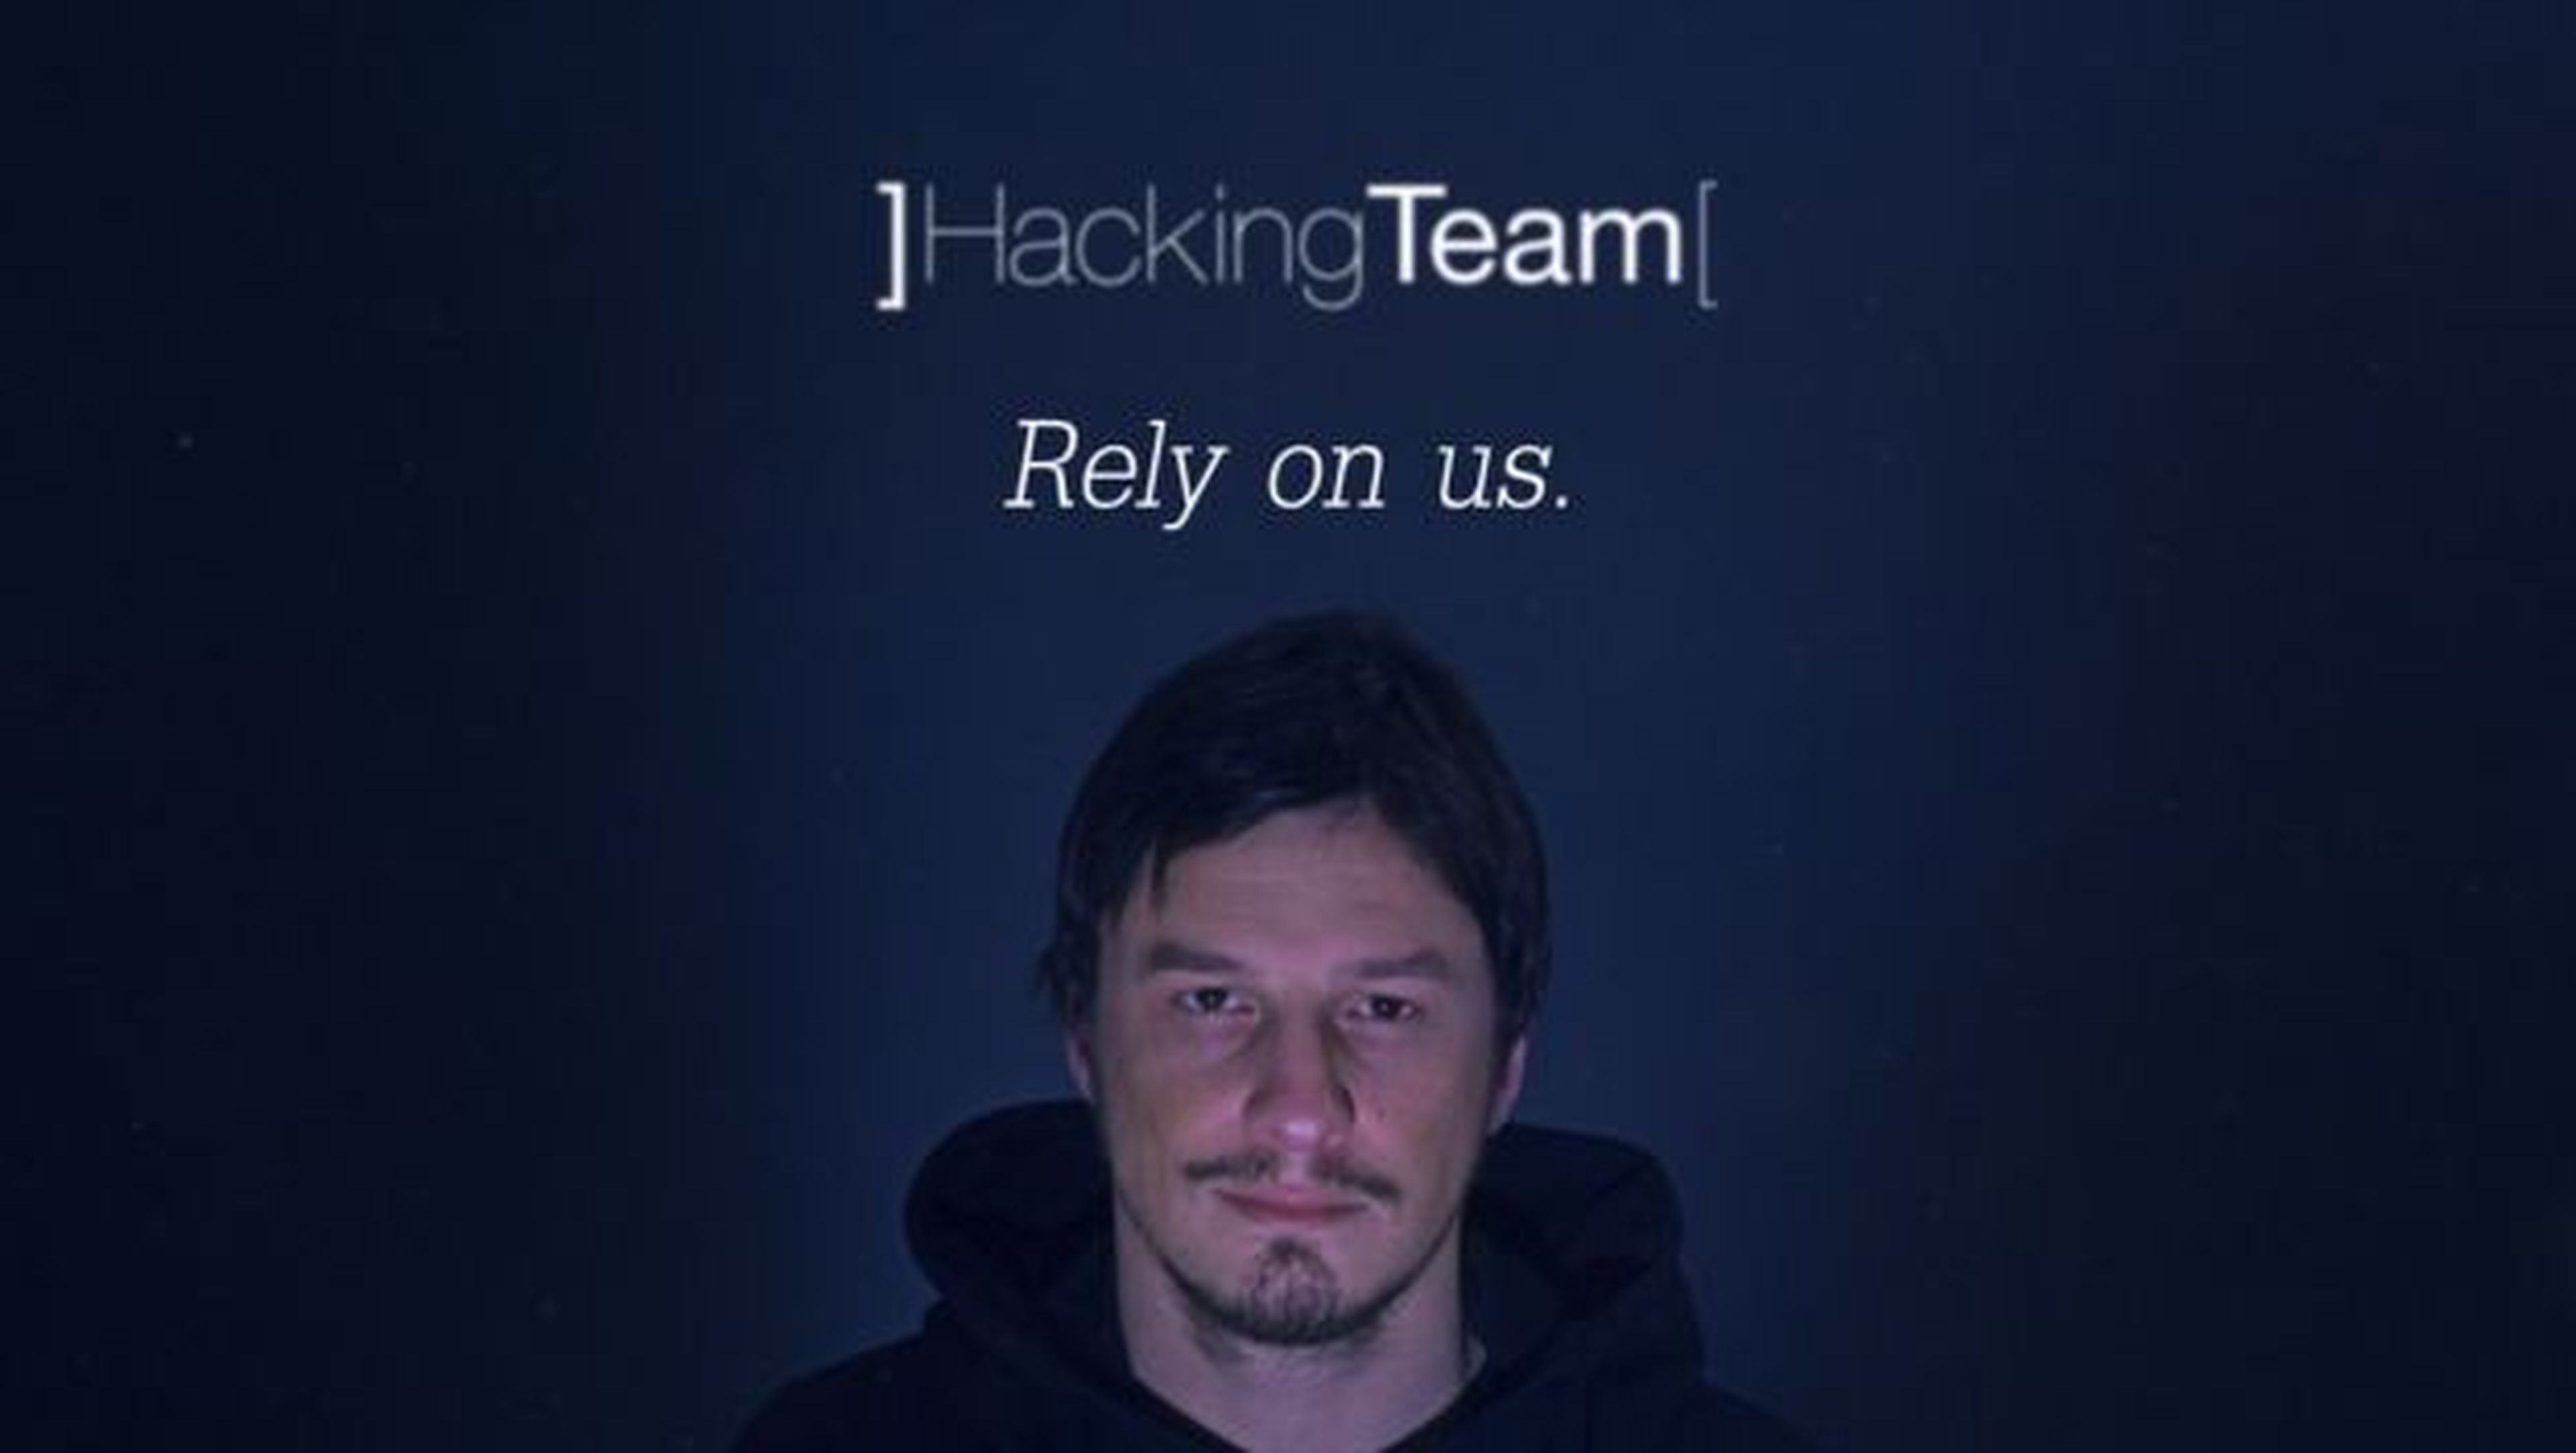 malware hacking team